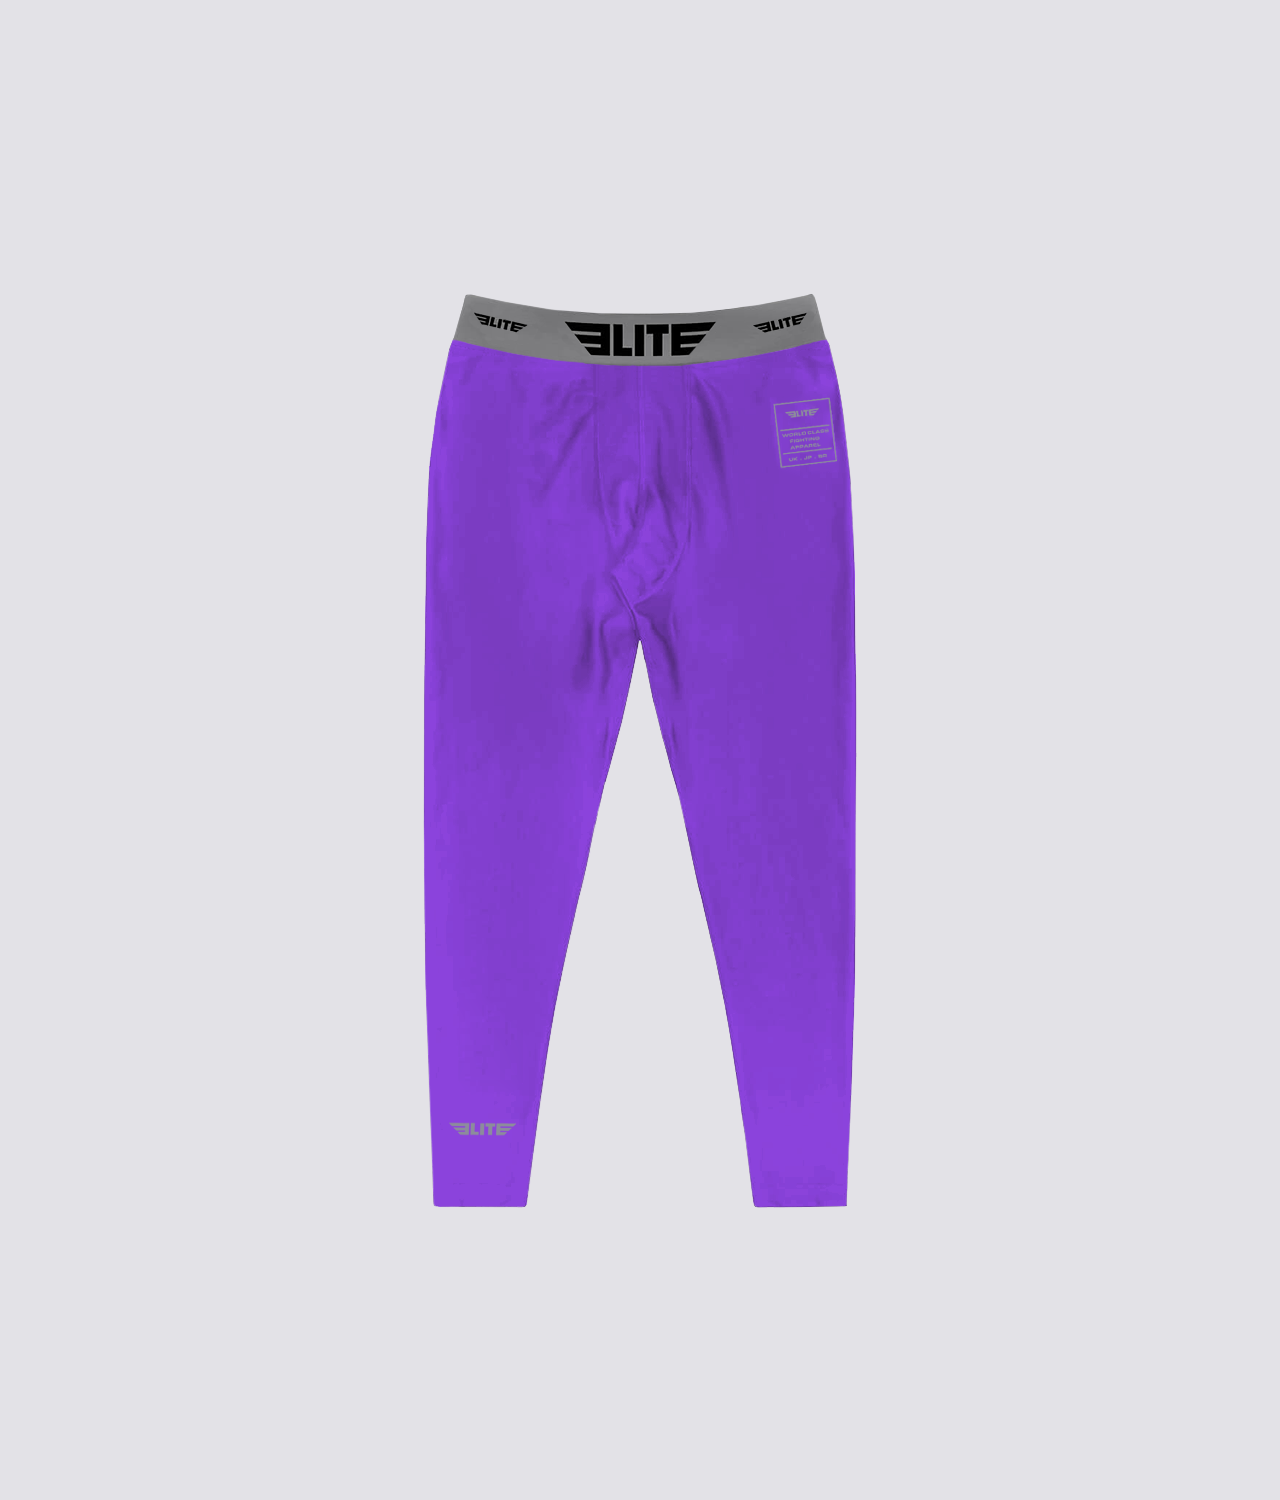 Men's Plain Purple Compression Muay Thai Spat Pants